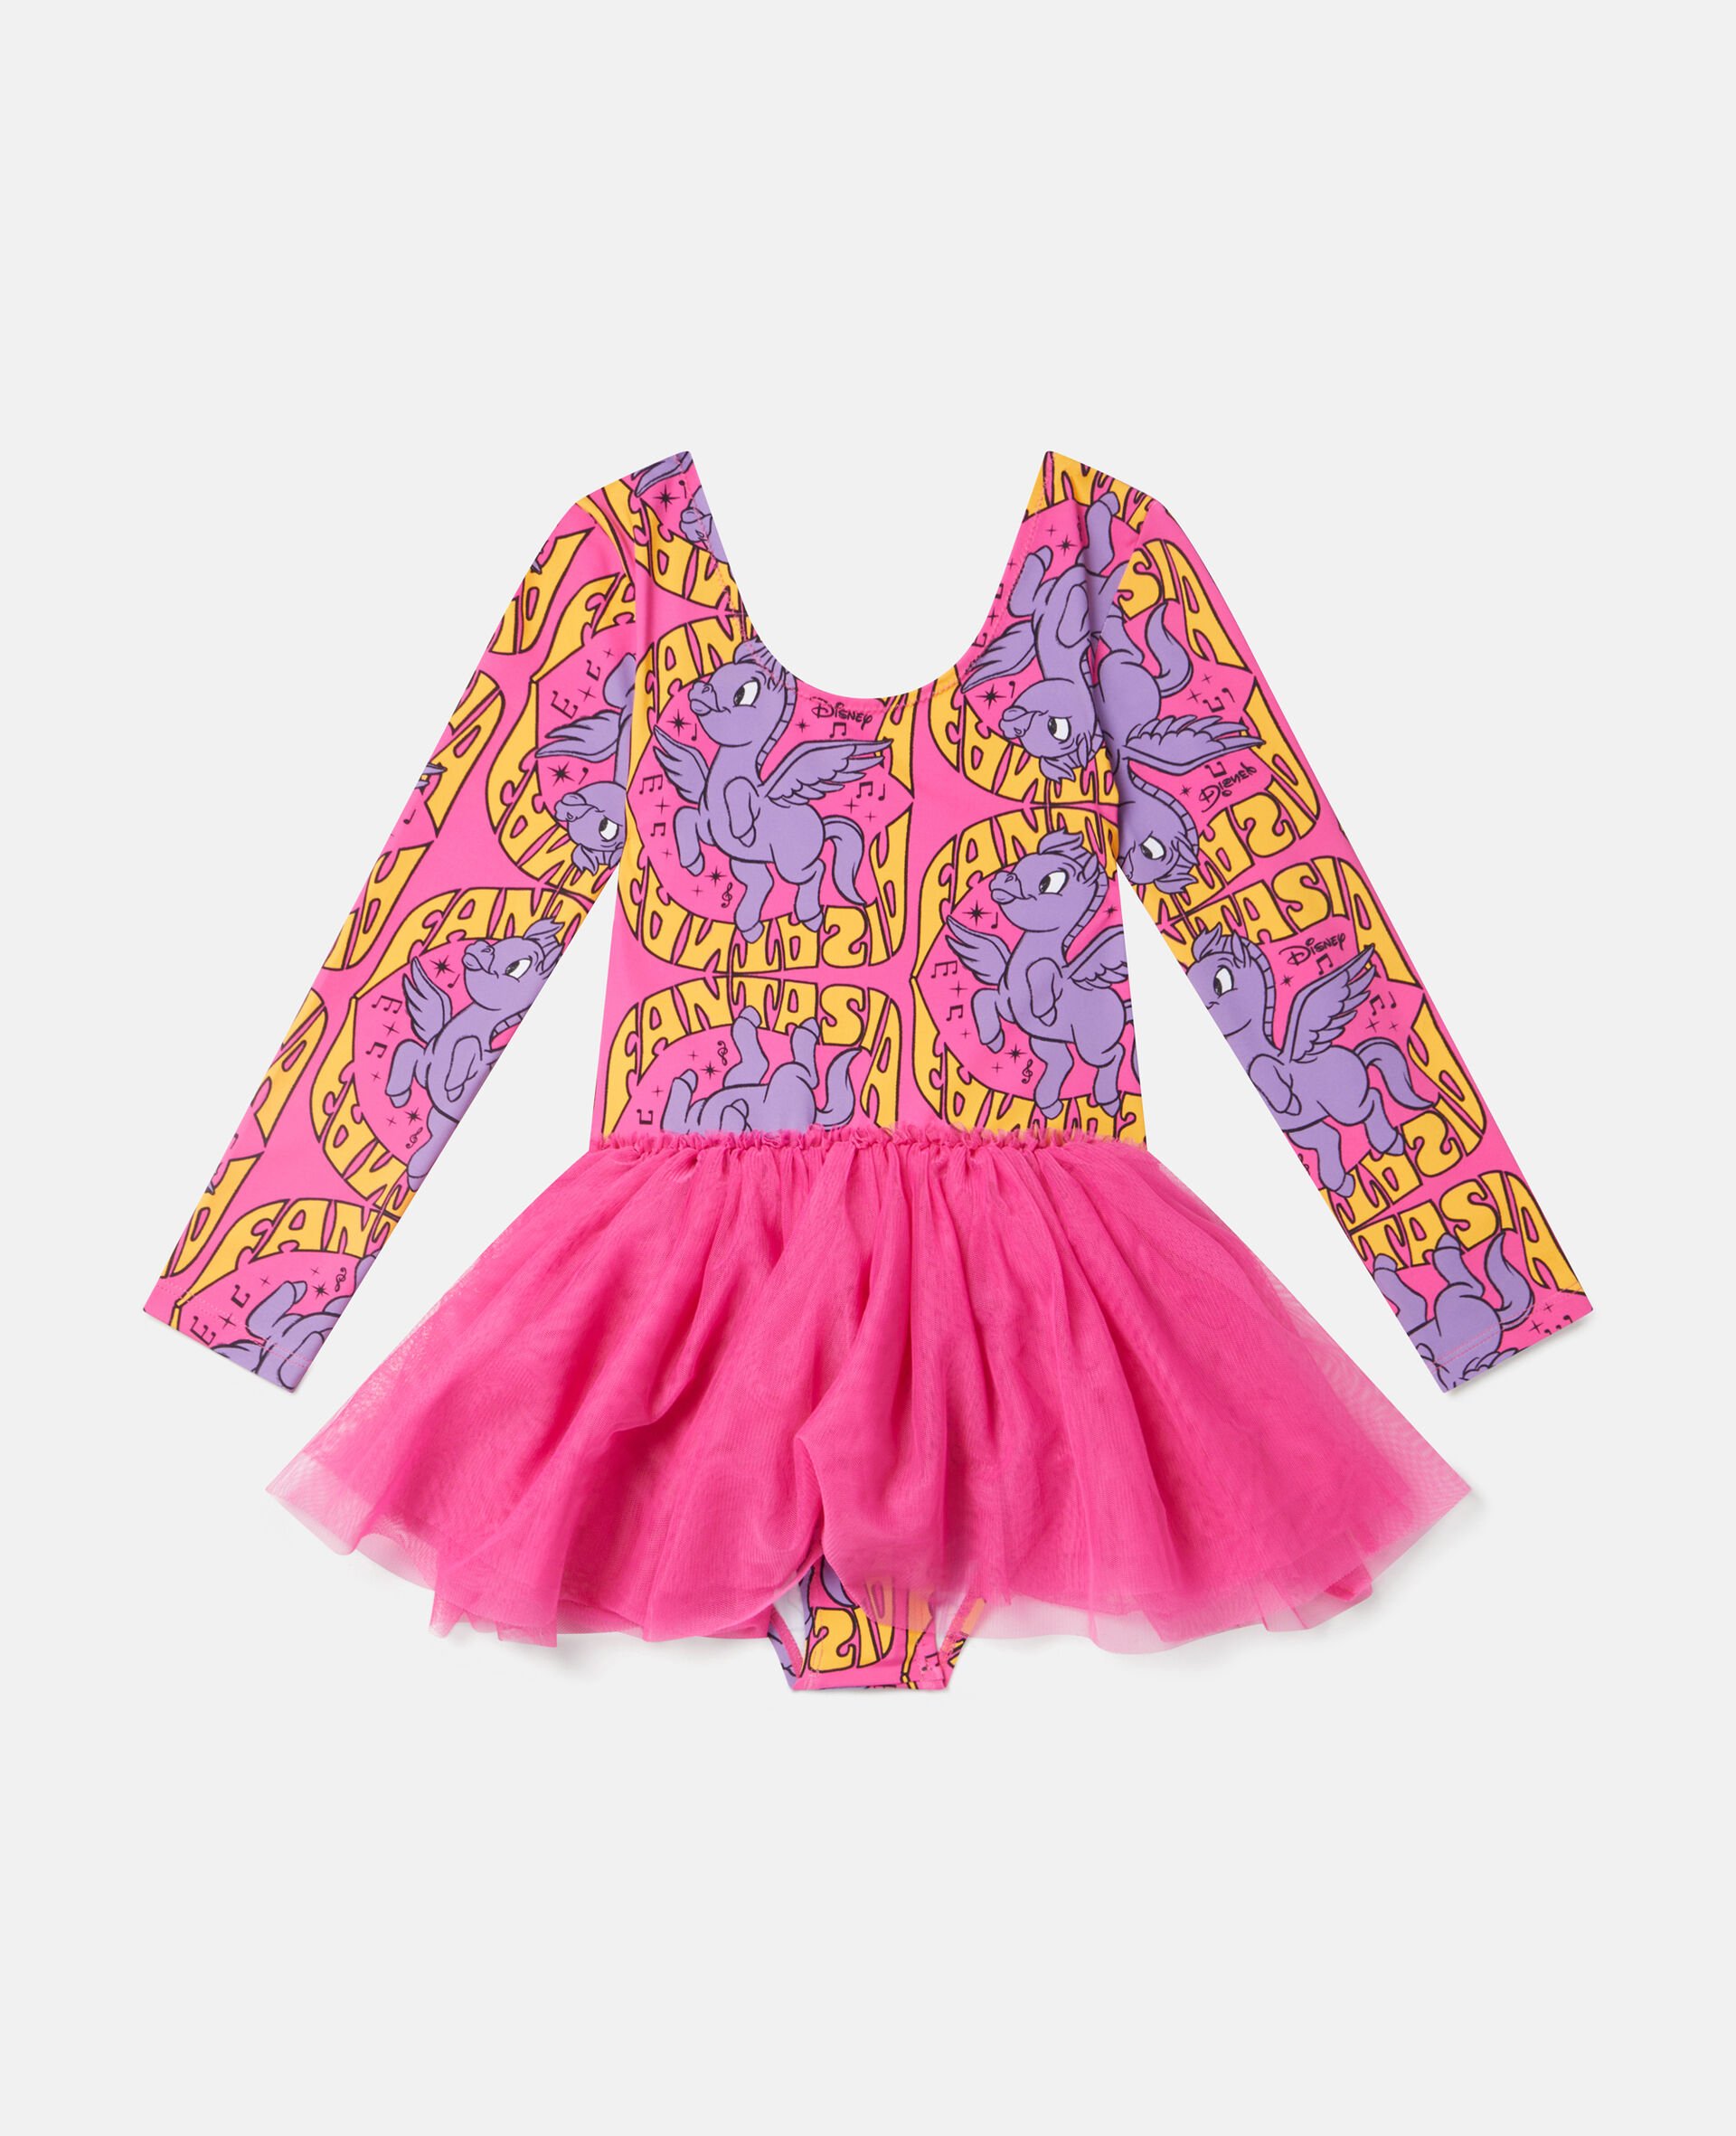 Fantasia Pegasus Print Tulle Bodysuit-Pink-large